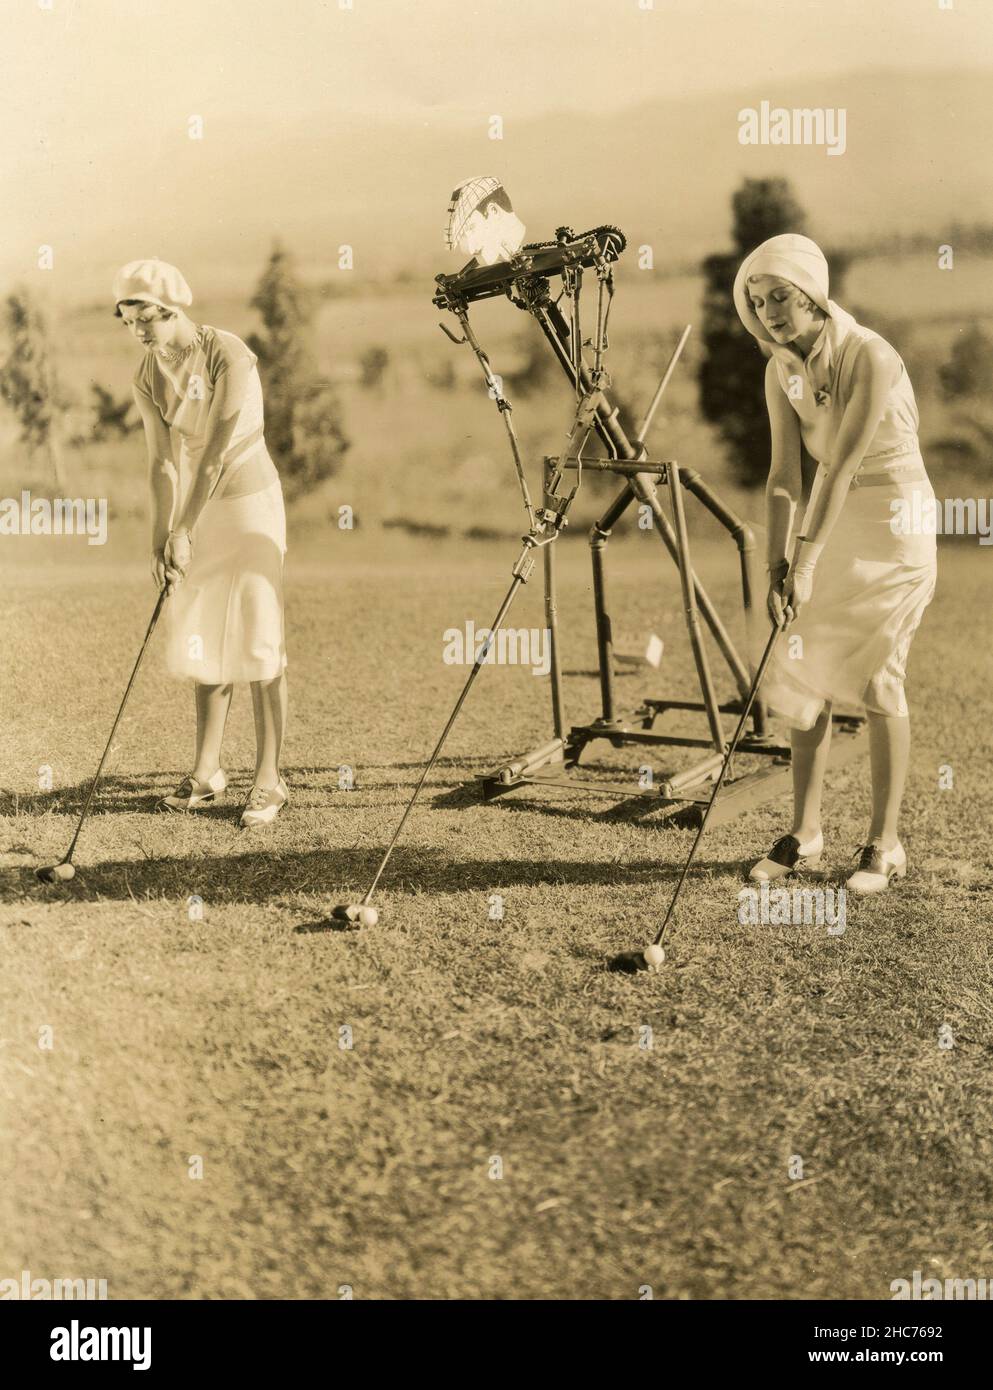 Golf dress immagini e fotografie stock ad alta risoluzione - Alamy